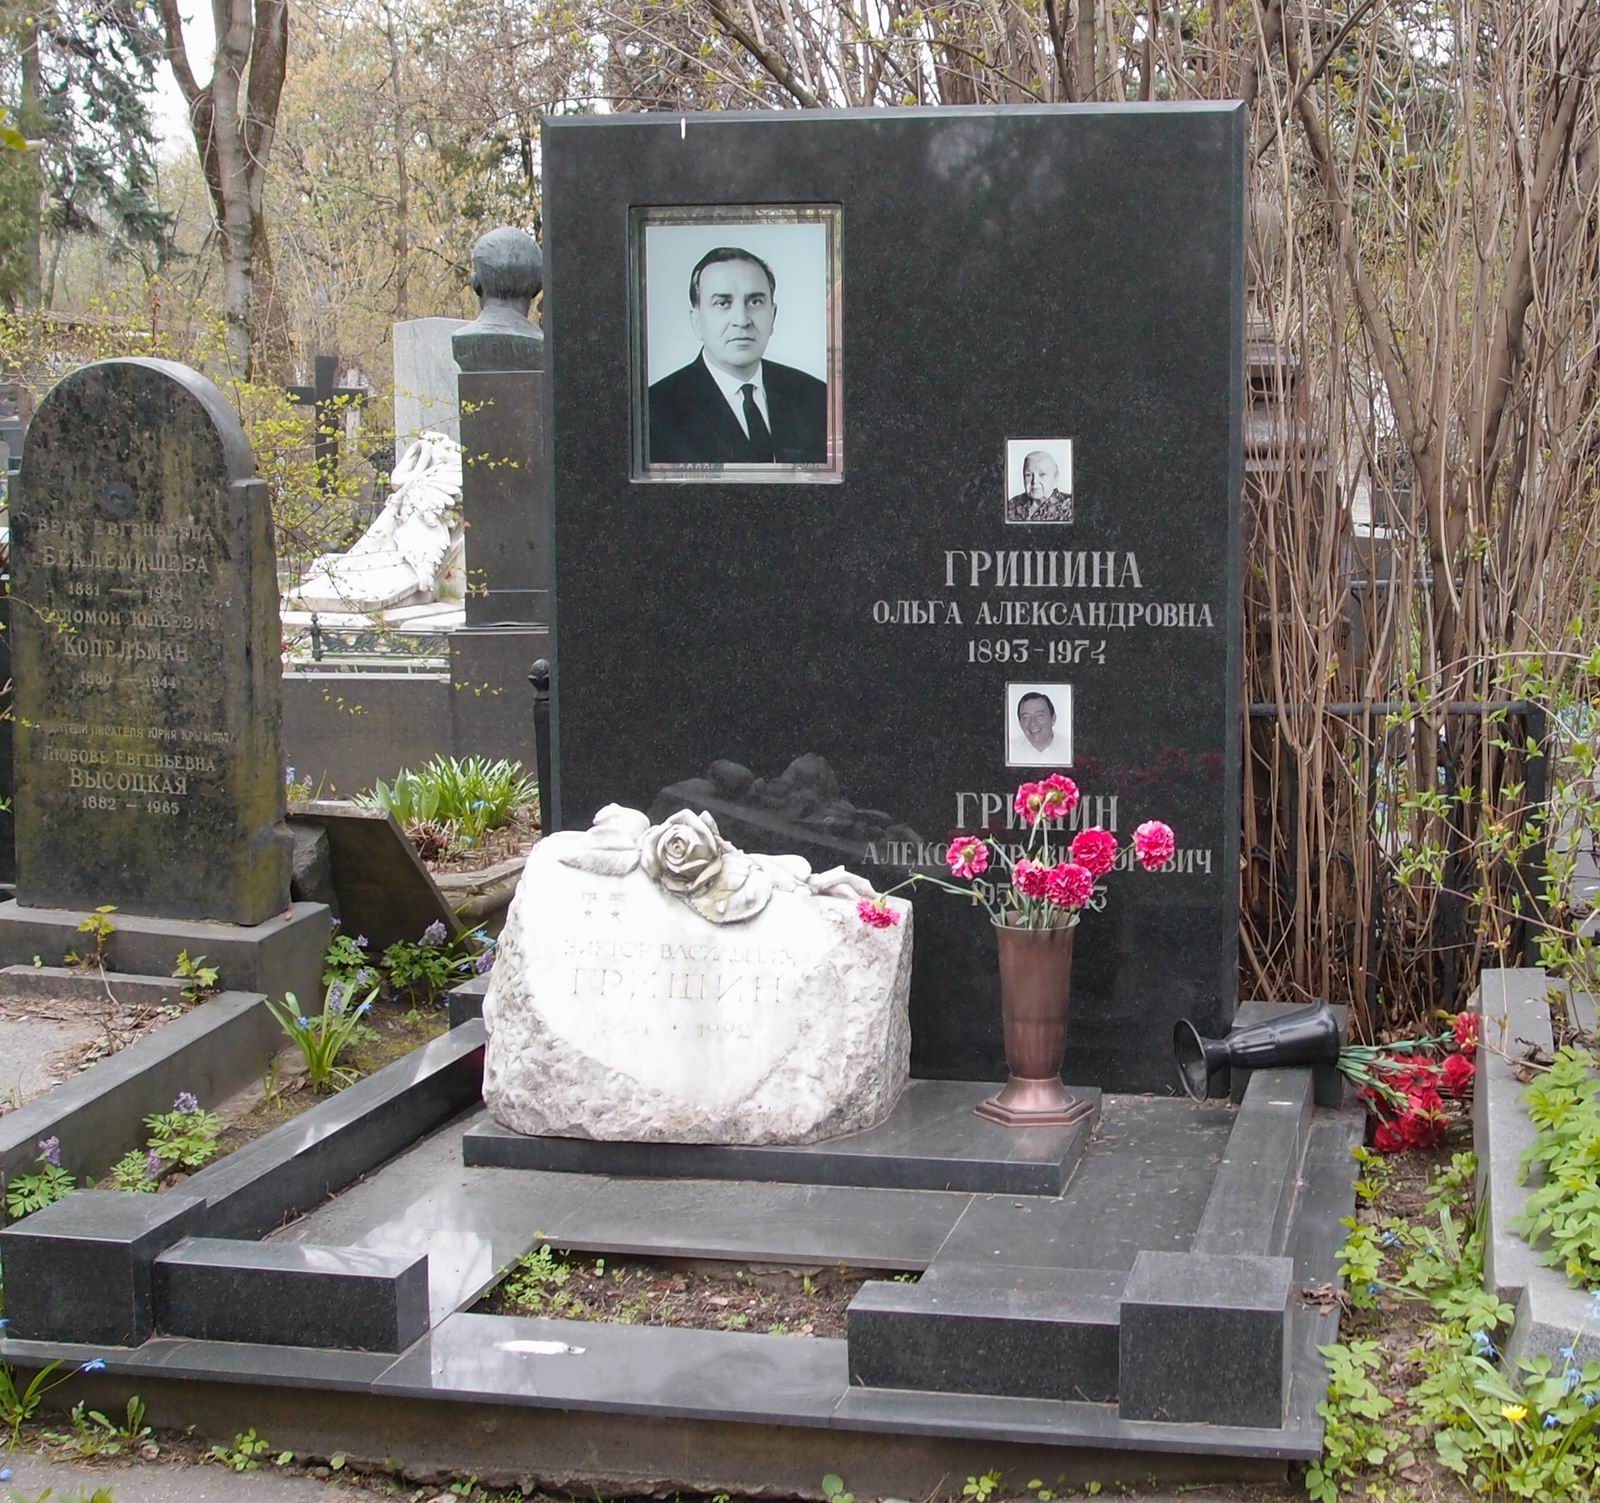 Памятник на могиле Гришина В.В. (1914–1992), на Новодевичьем кладбище (2–25–7). Нажмите левую кнопку мыши чтобы увидеть предыдущий вариант памятника.